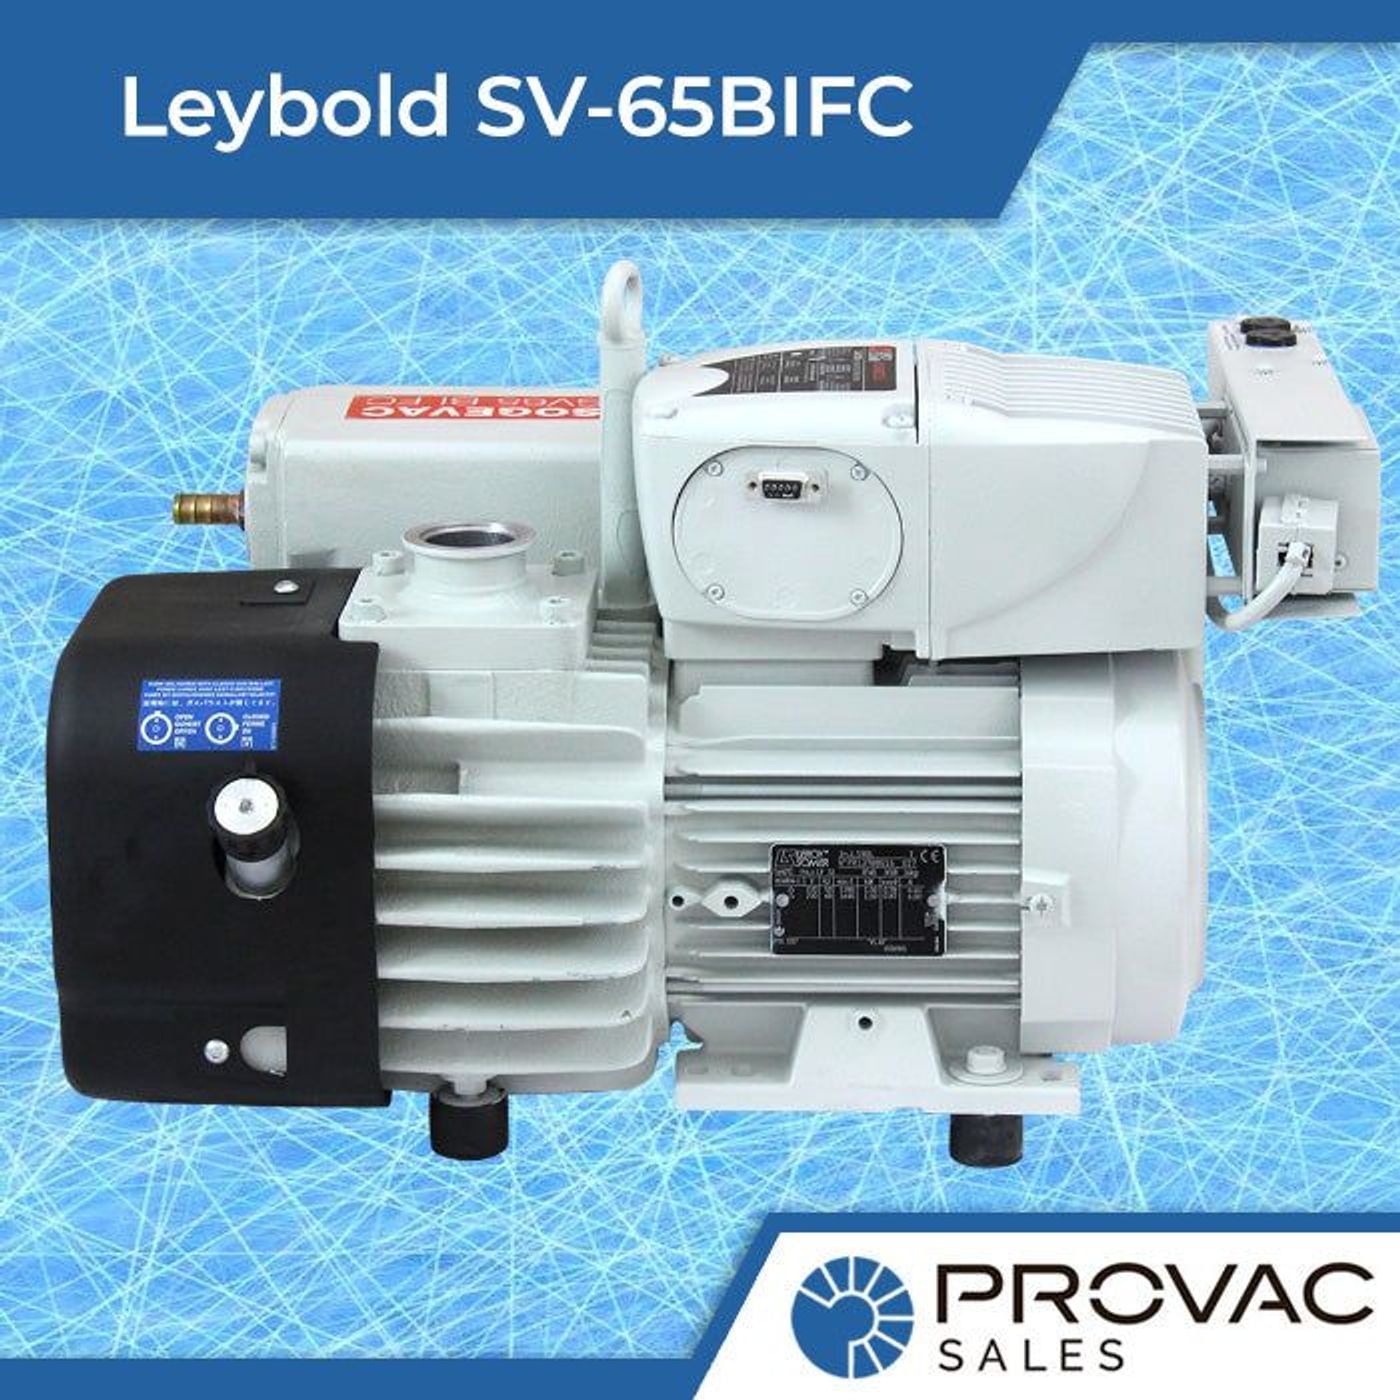 Leybold SV-65BIFC Vane Pump: Rebuilt, In Stock, Ready to Ship!